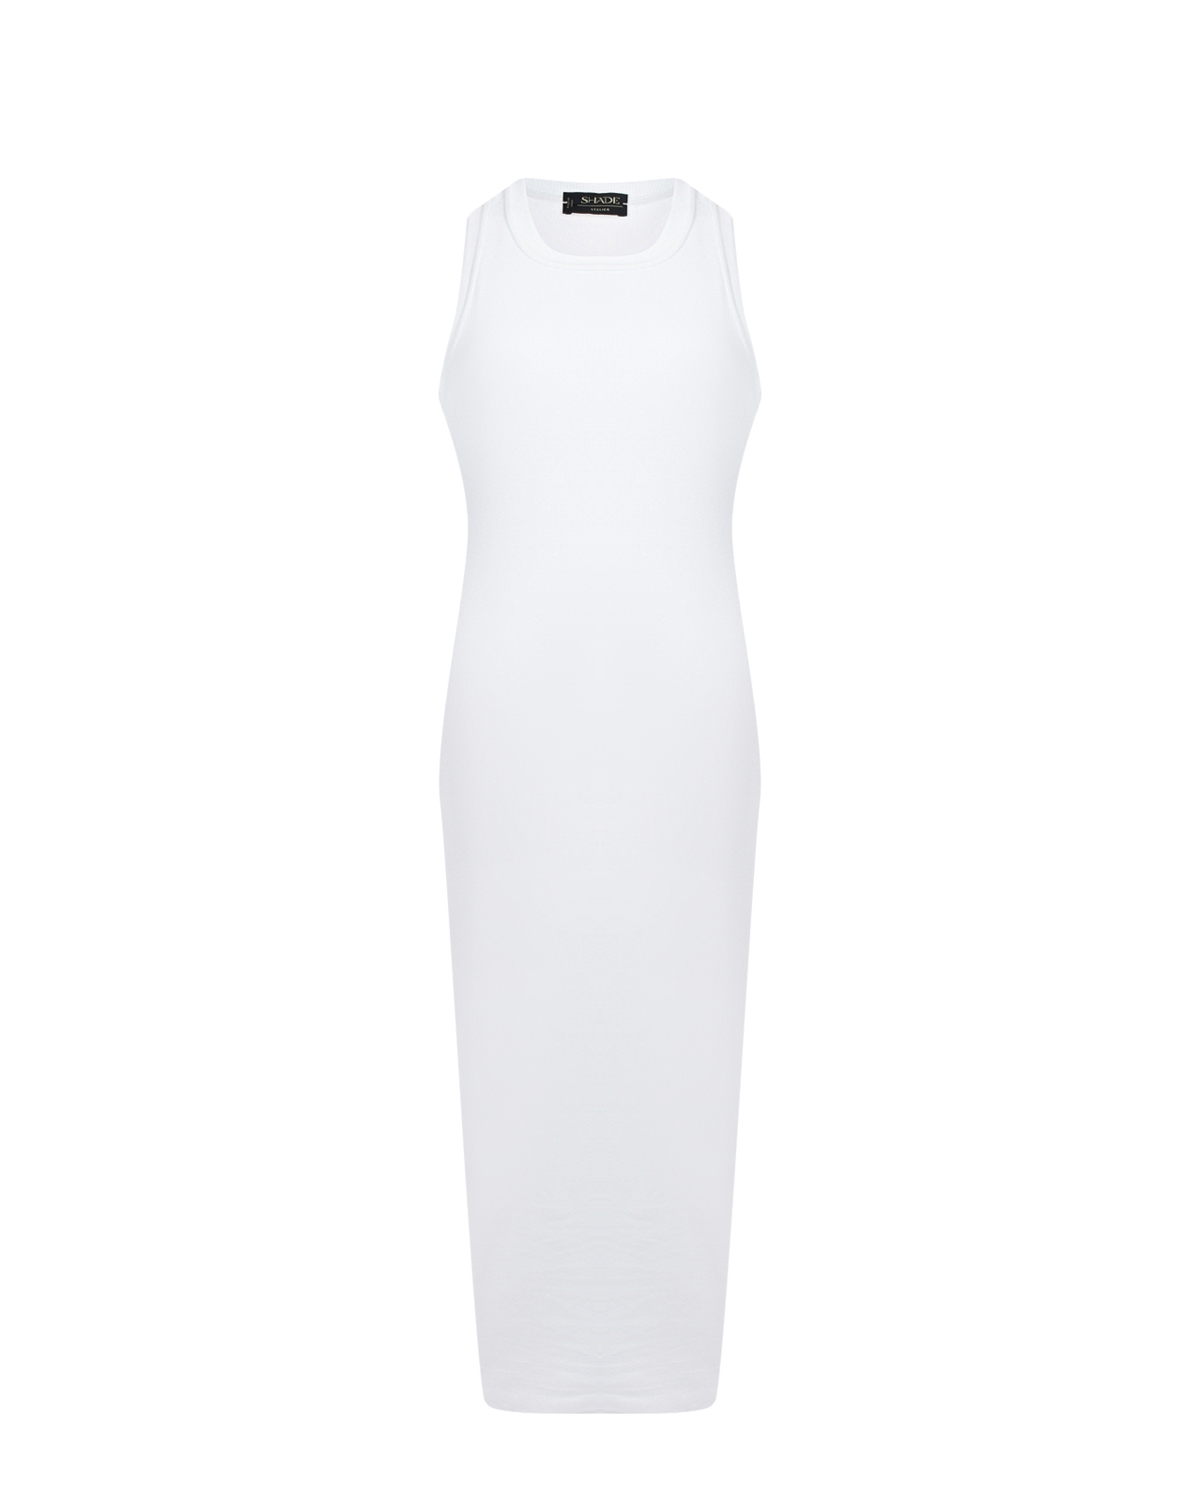 Белое платье-майка из хлопка SHADE платье для животных клубничка s дс 25 ог 35 см белое